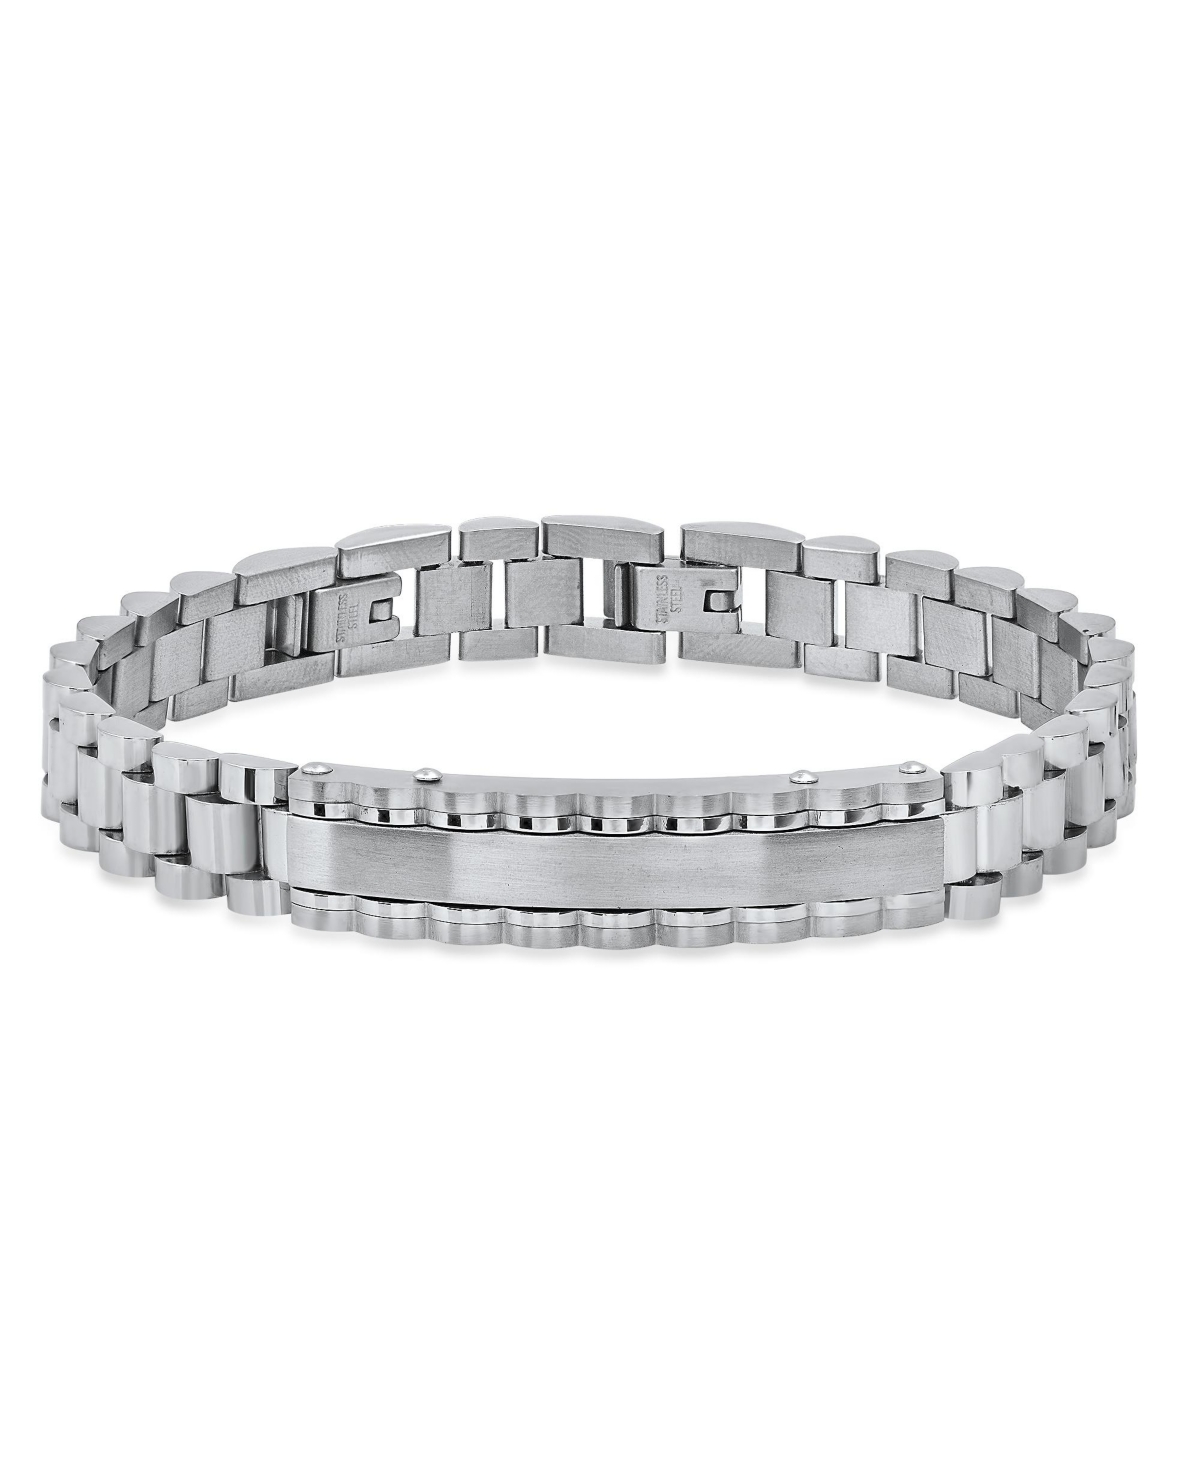 Hmy Jewelry Woven Metal Id Watch Band Bracelet In Gray